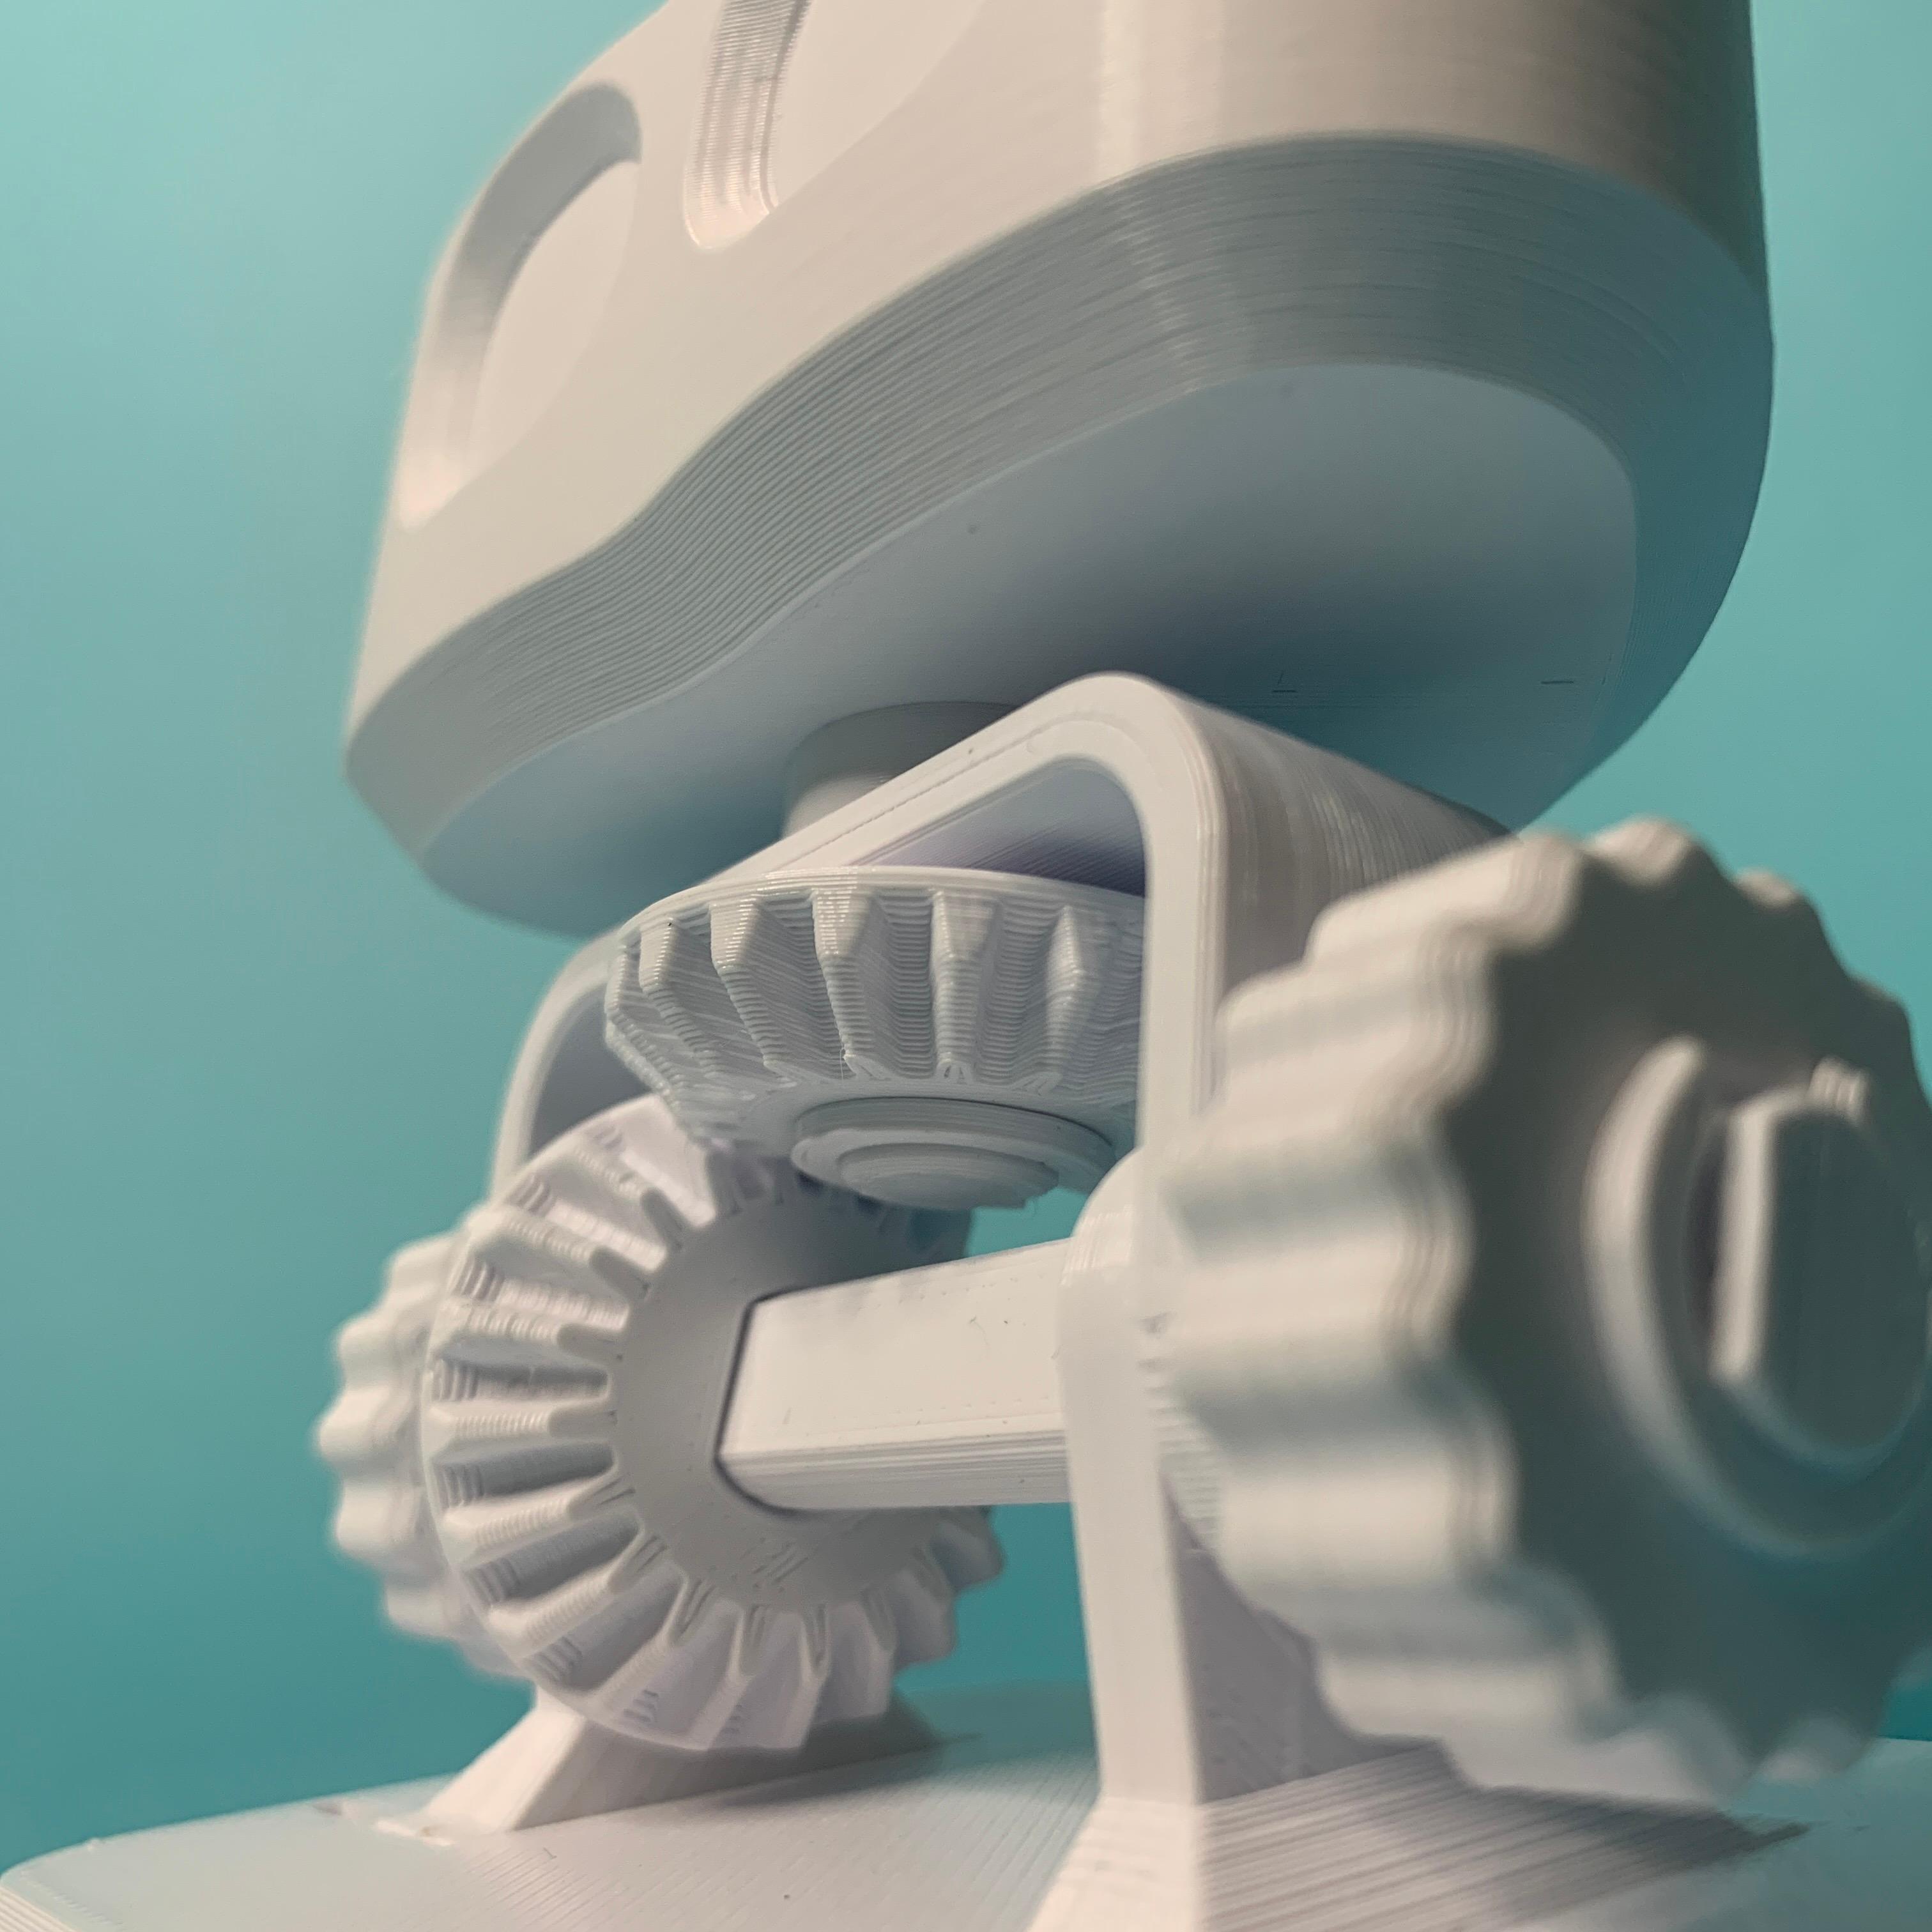 RobBob the Robot Head 3d model